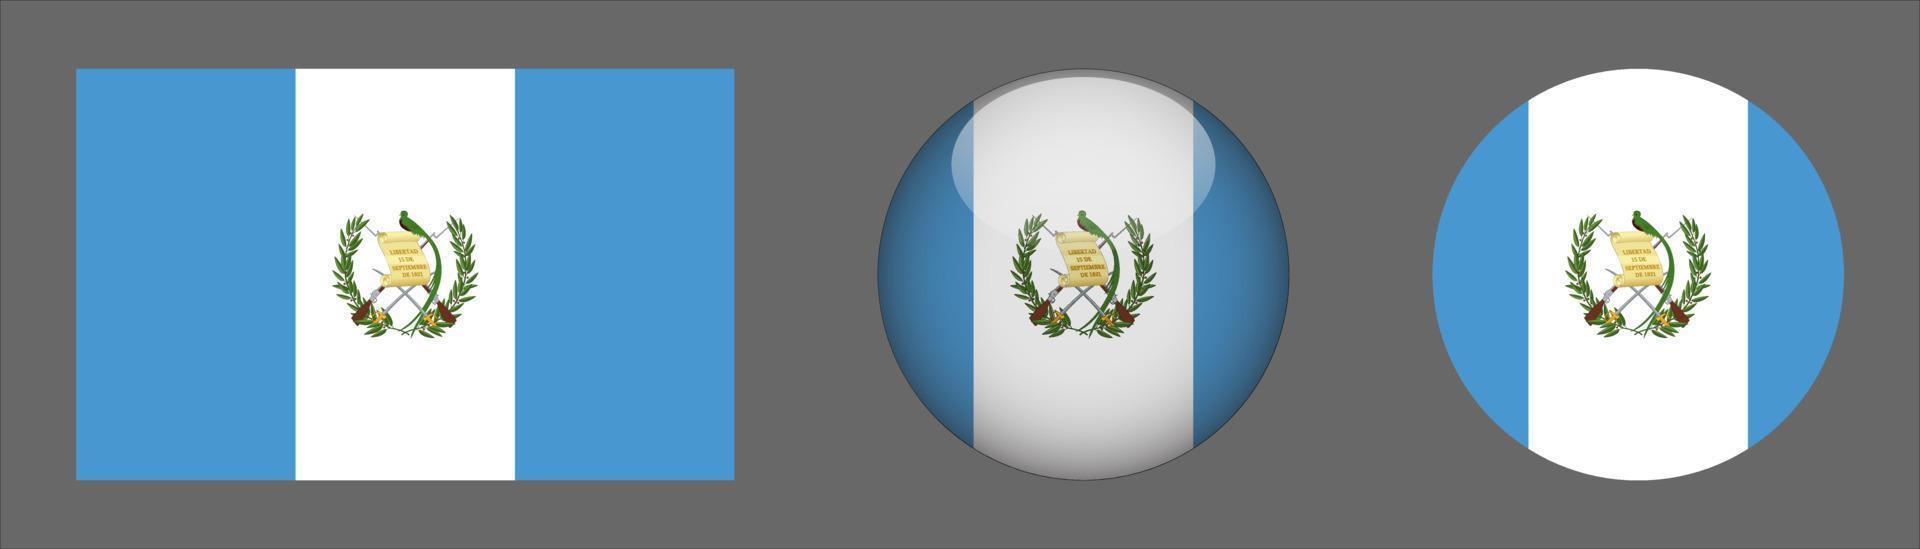 Colección de conjunto de bandera de Guatemala, relación de tamaño original, redondeado en 3D y redondeado plano vector